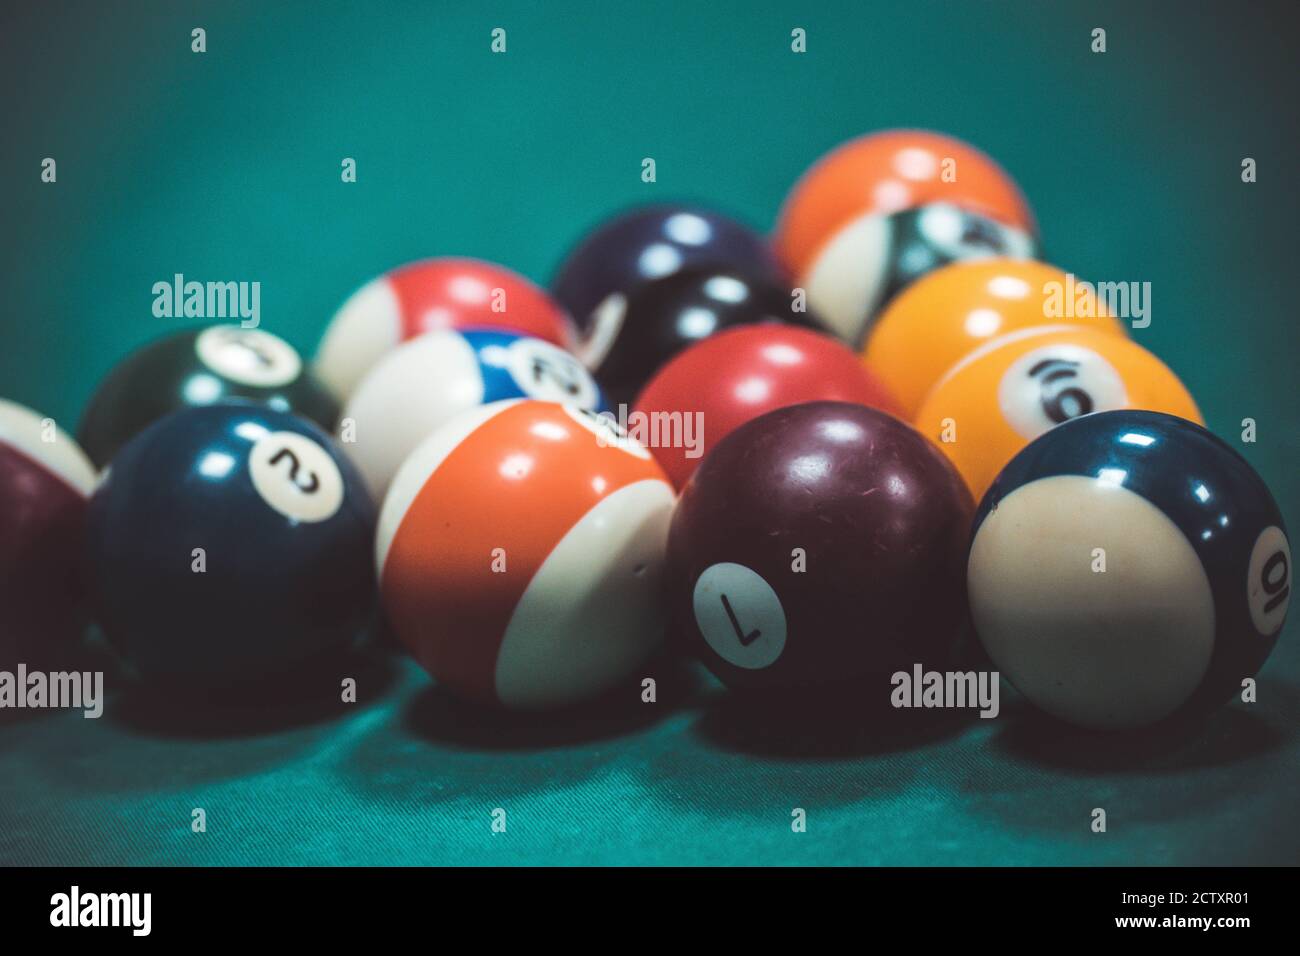 playing biliard in a pool Stock Photo - Alamy